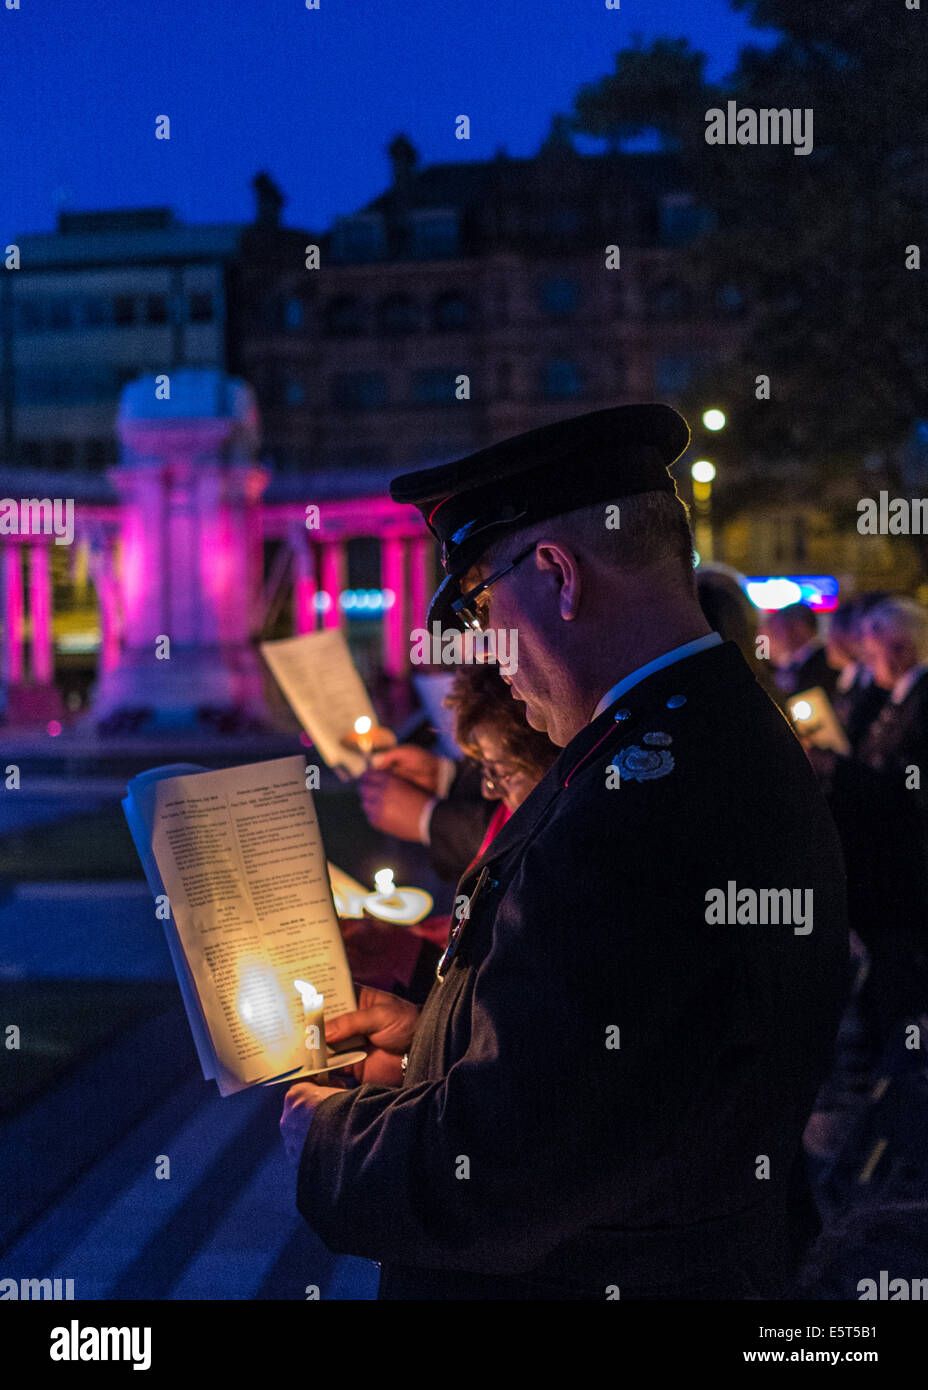 WW1 Candlelight Vigil in der Belfast City Hall.  Uniformierter Beamter aus Nordirland Feuerwehr steht mit brennenden Kerze. Stockfoto